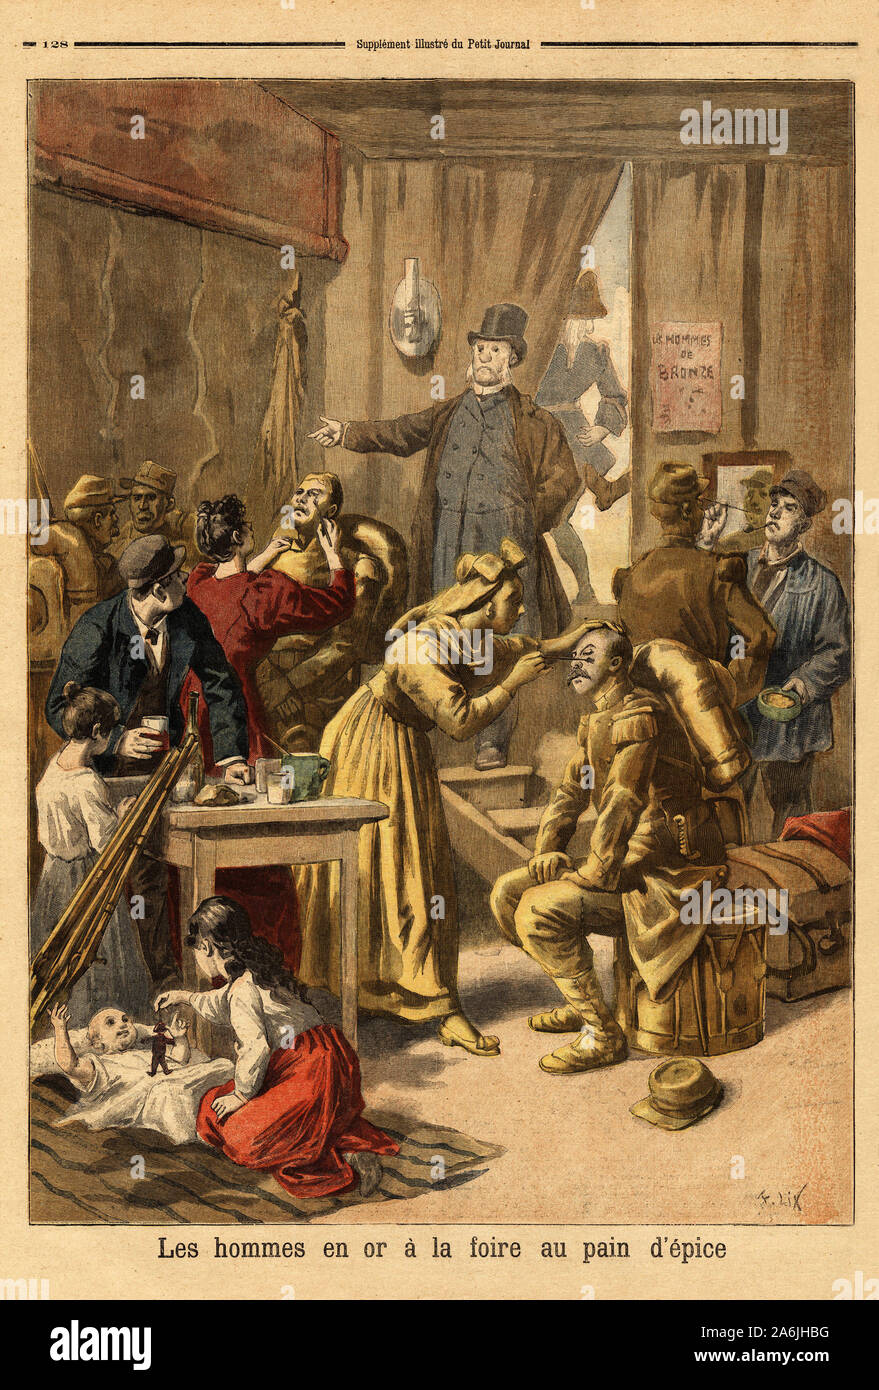 Maquillage des acteurs d'un tableau vivant 'les hommes en or' pour la foire au pain d'epice.  Gravure in 'Le petit journal' 16/04/1894. Collection de Stock Photo